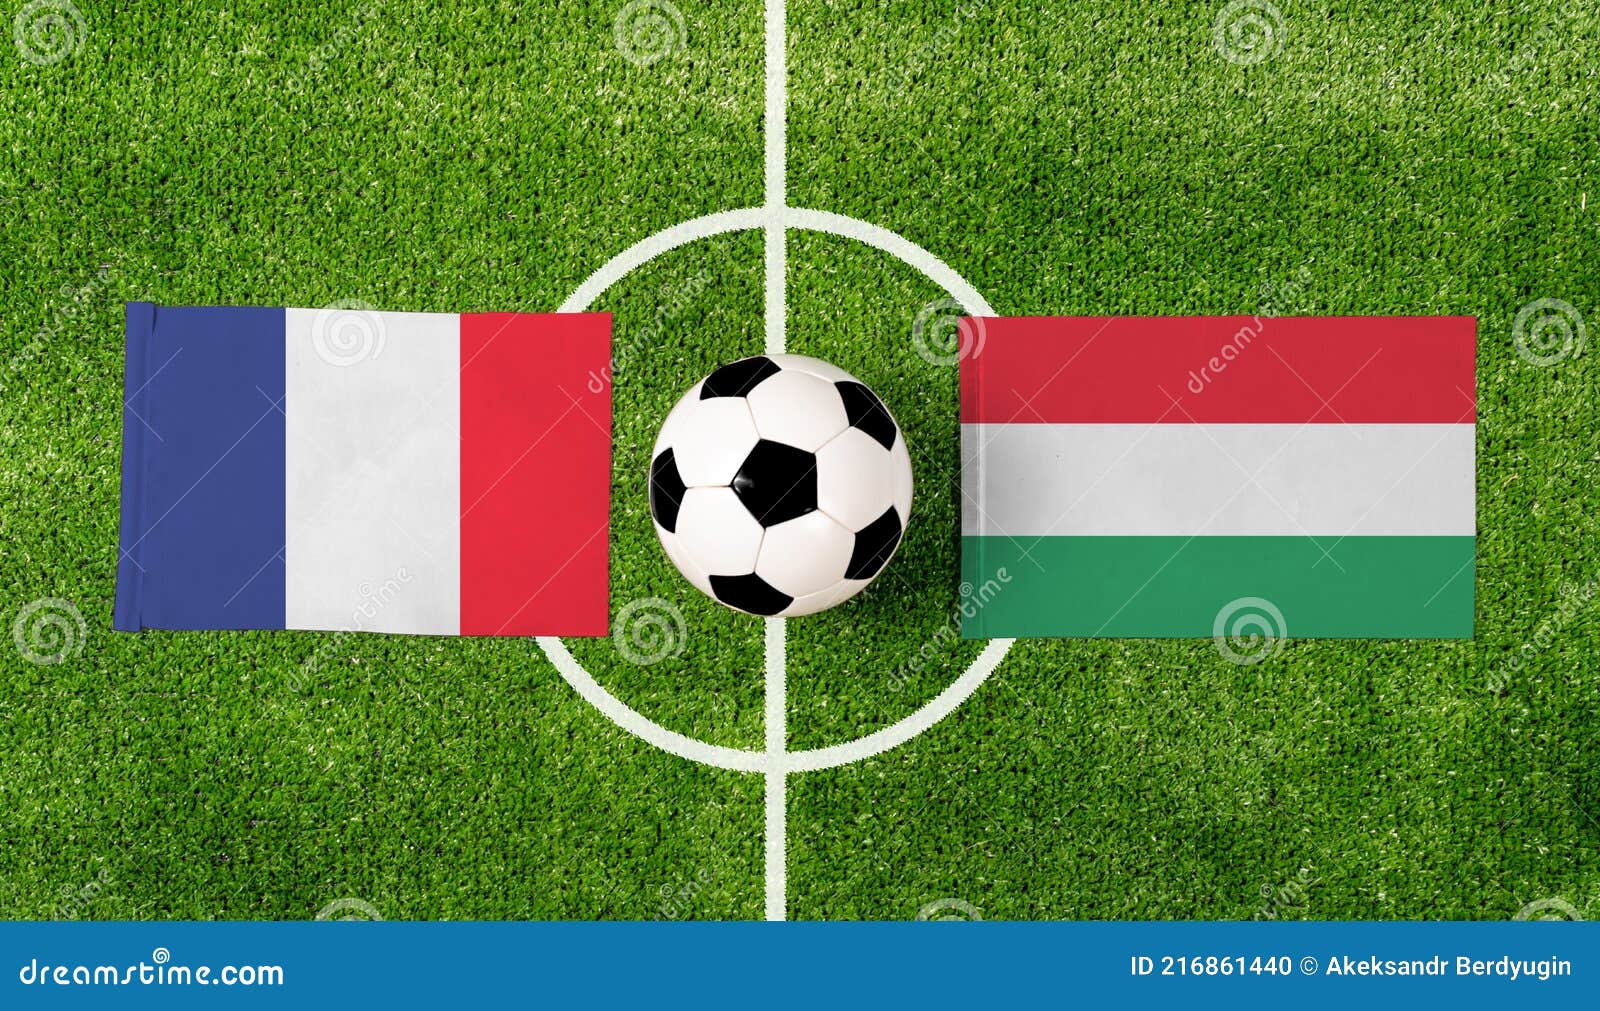 Hungary france vs Hungary Vs